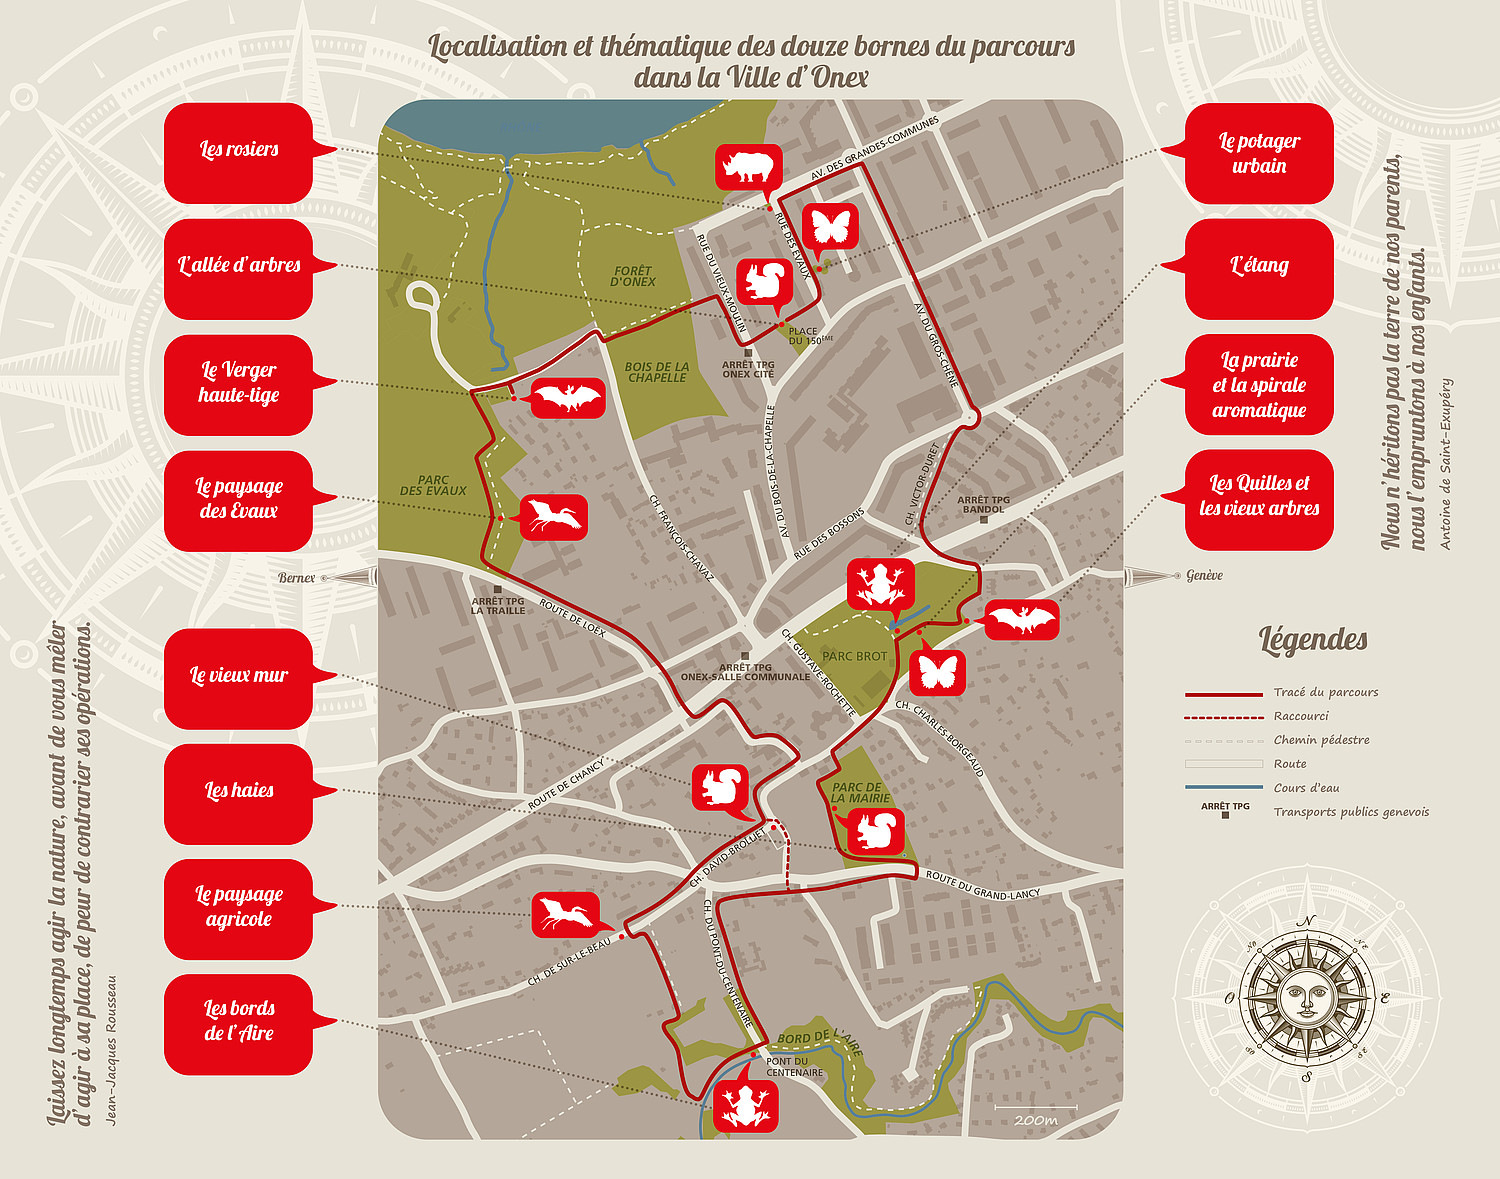 De nombreuses communes s’engagent en faveur de la biodiversité. Par exemple la Ville d’Onex (GE) par son parcours «Nature en ville» avec ses 12 bornes.